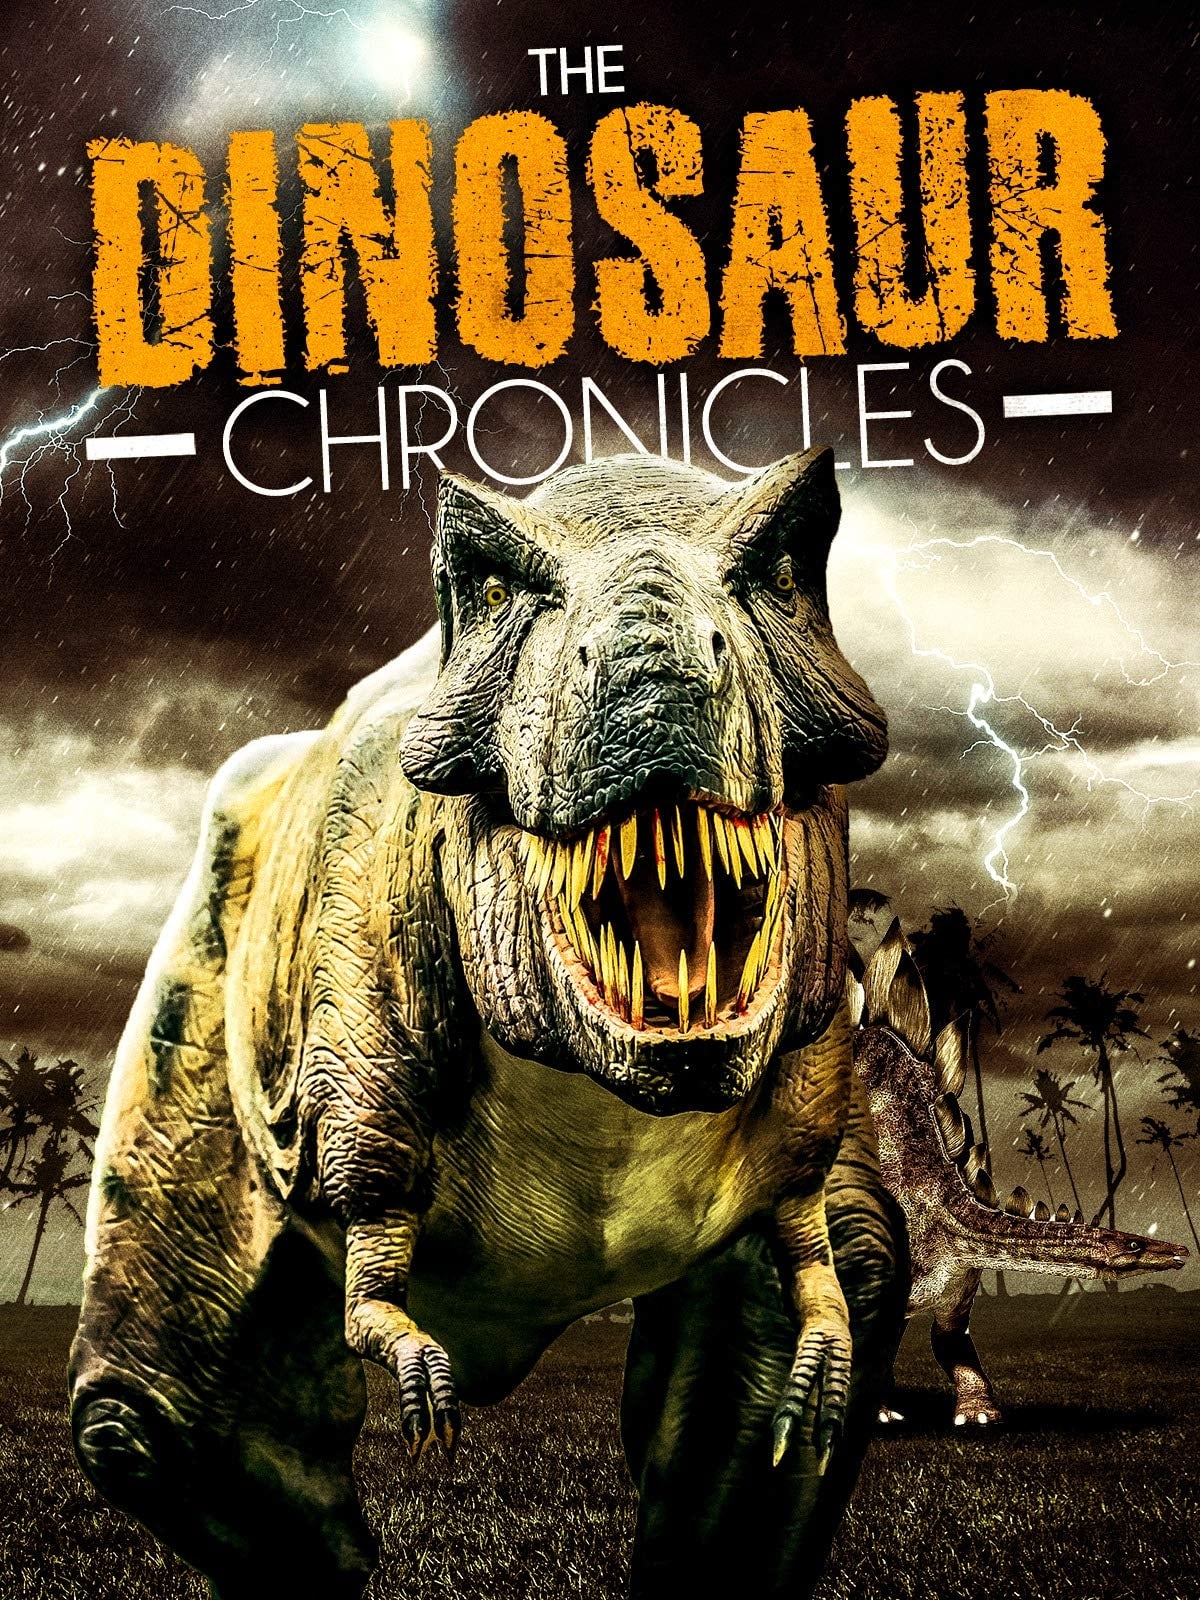 The Dinosaur Chronicles